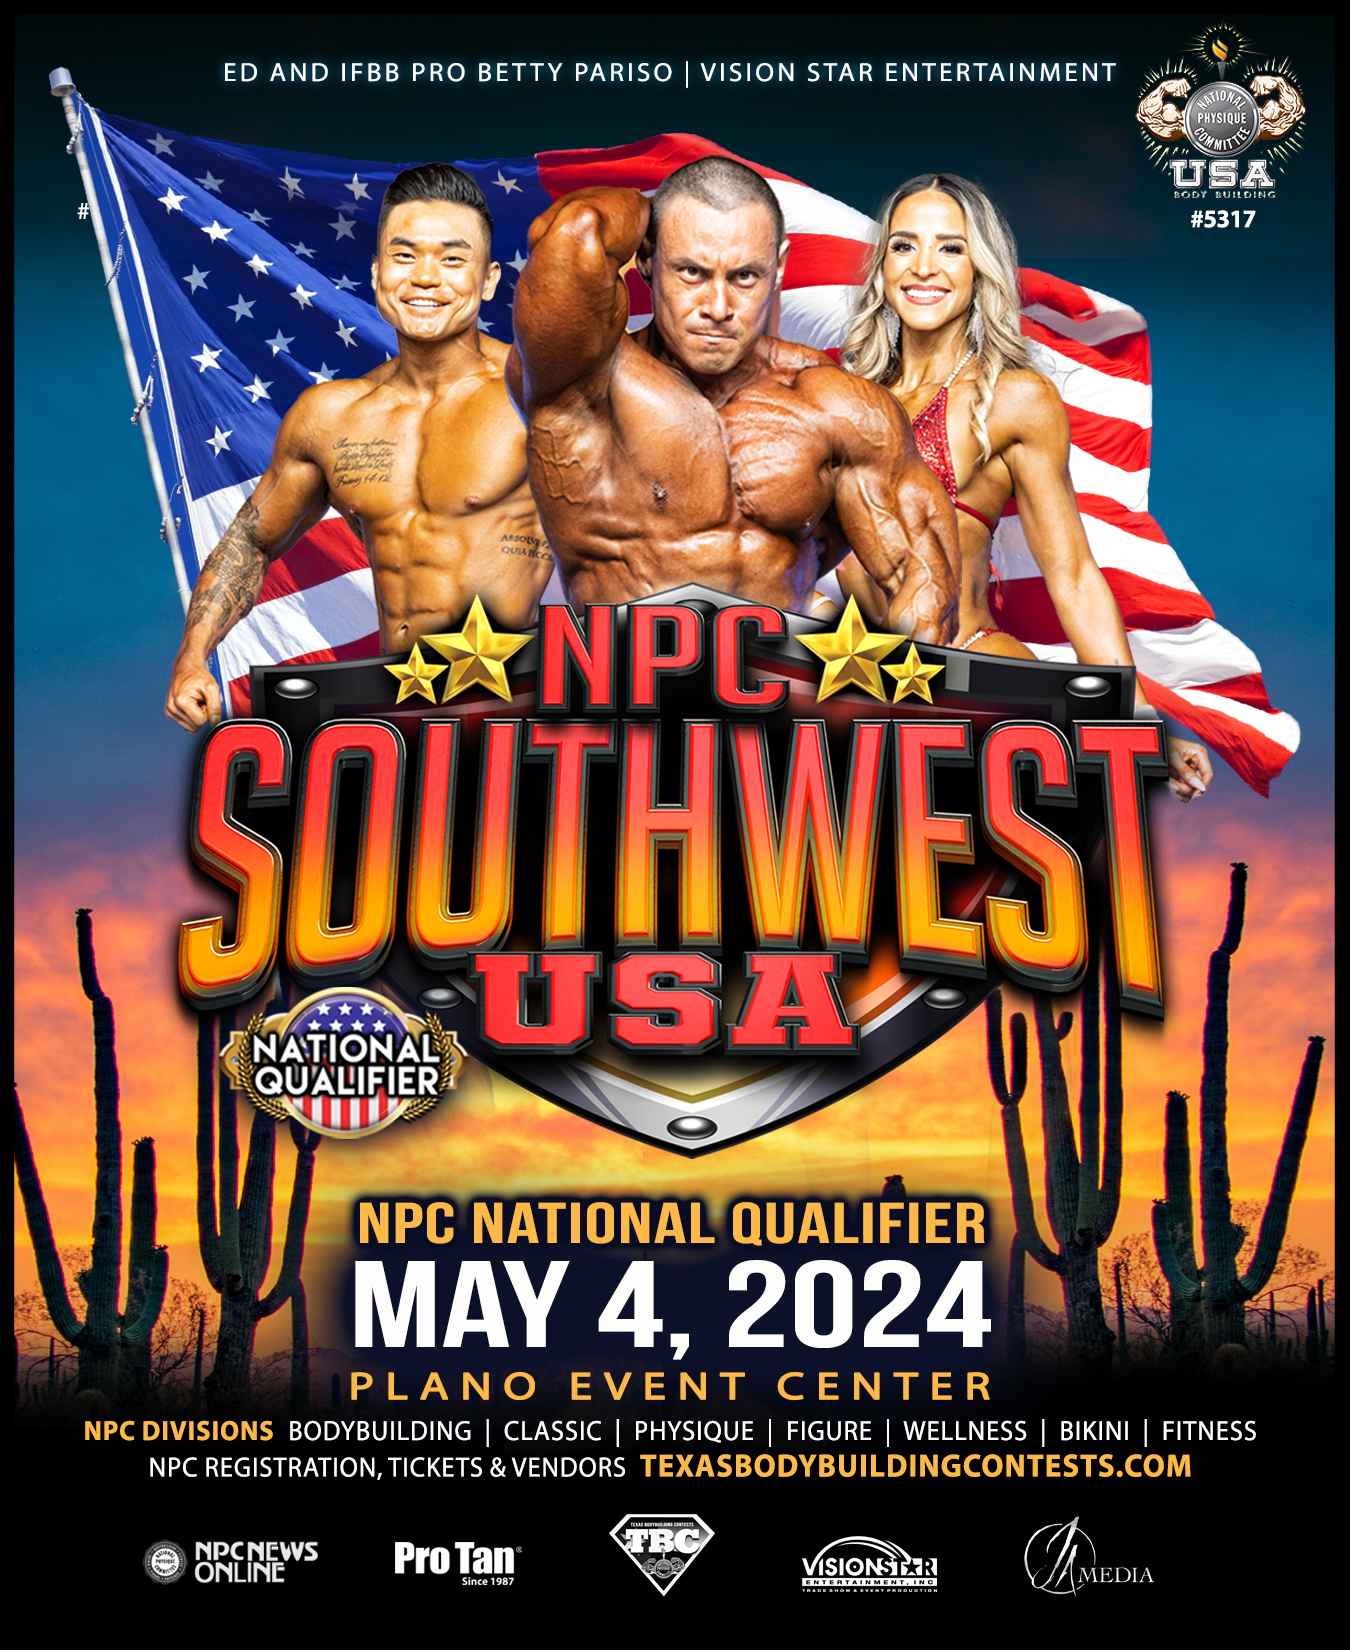 NPC Southwest USA